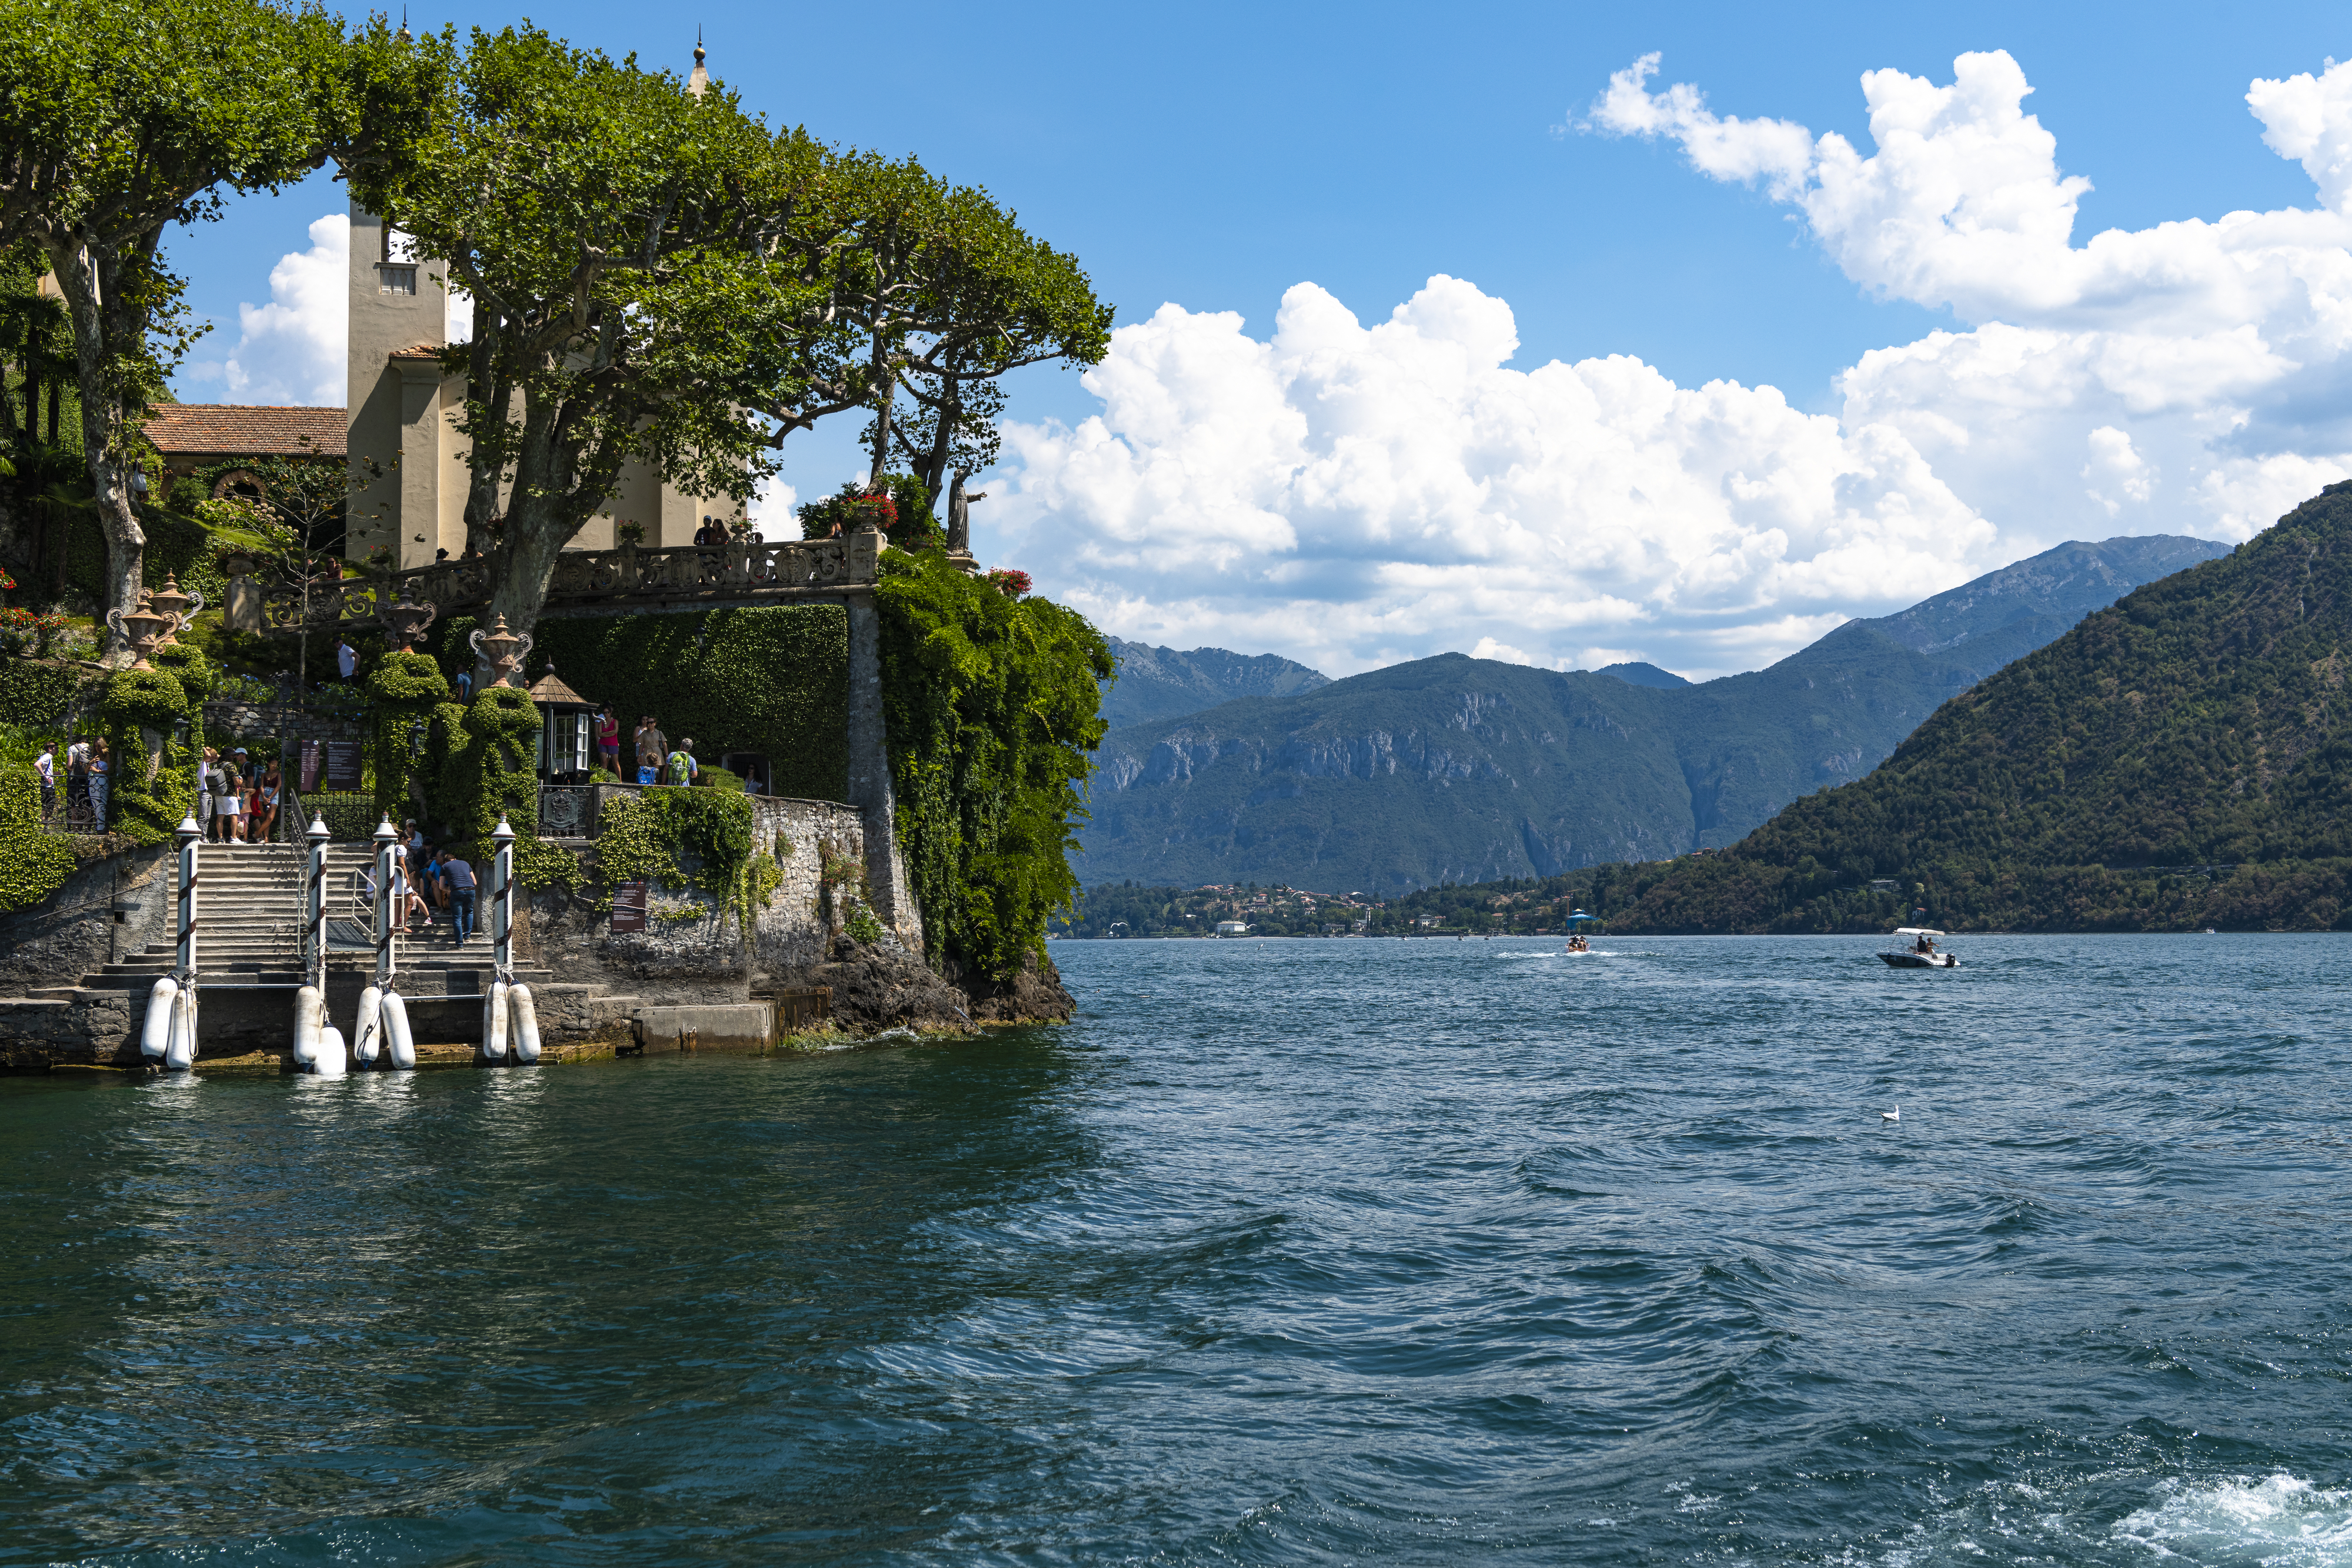 이탈리아 코모호수에서 배를 타고 ‘코모호의 진주’로 불리는 벨라조로 가는 길. 이승원 작가 제공